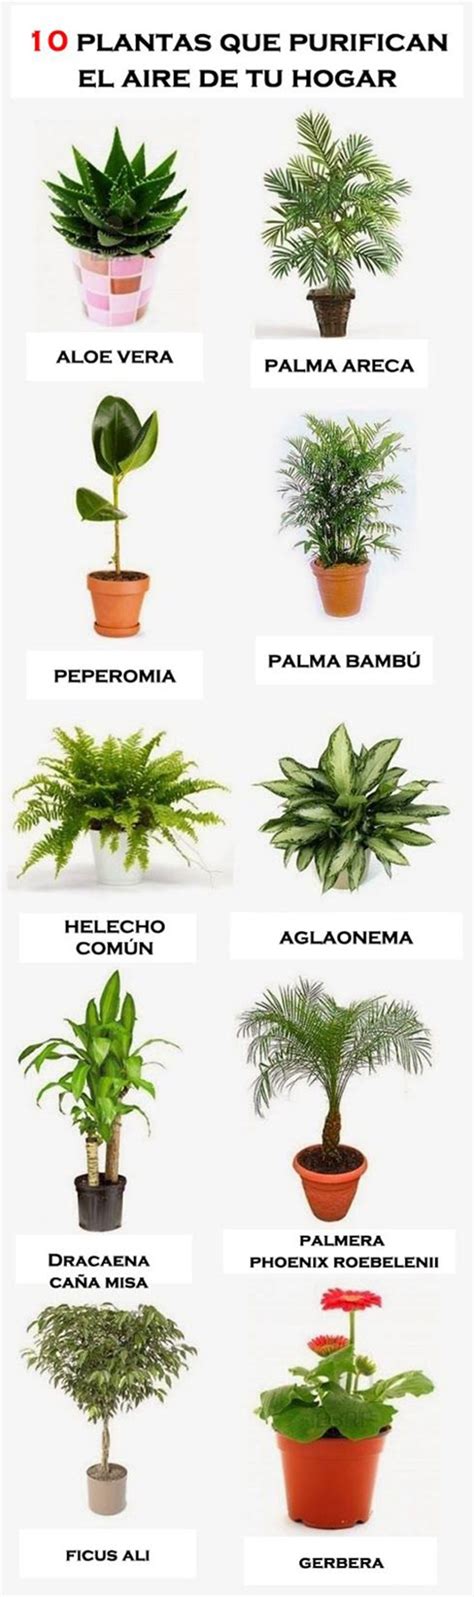 10 plantas para purificar el aire de tu hogar